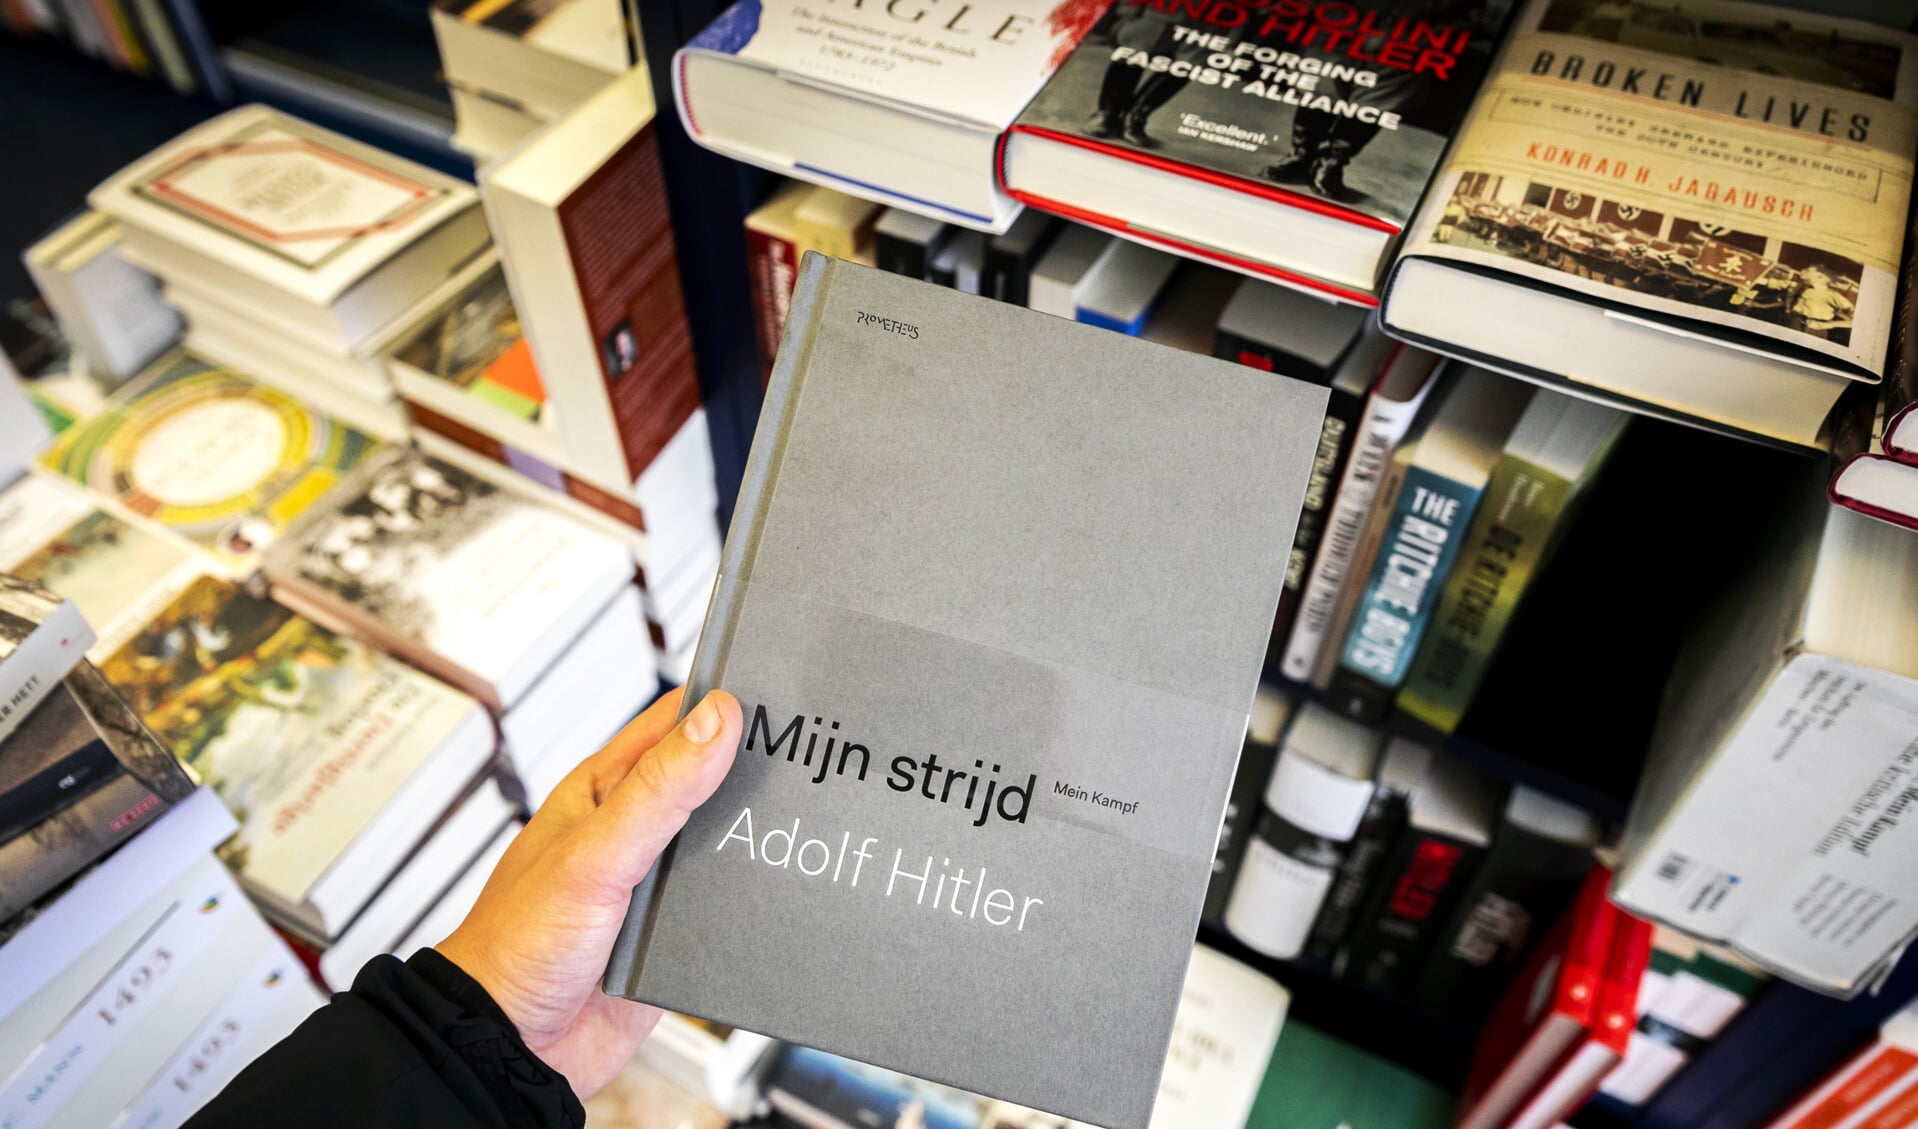 Wetenschappelijke vertaling Mein Kampf in winkel 